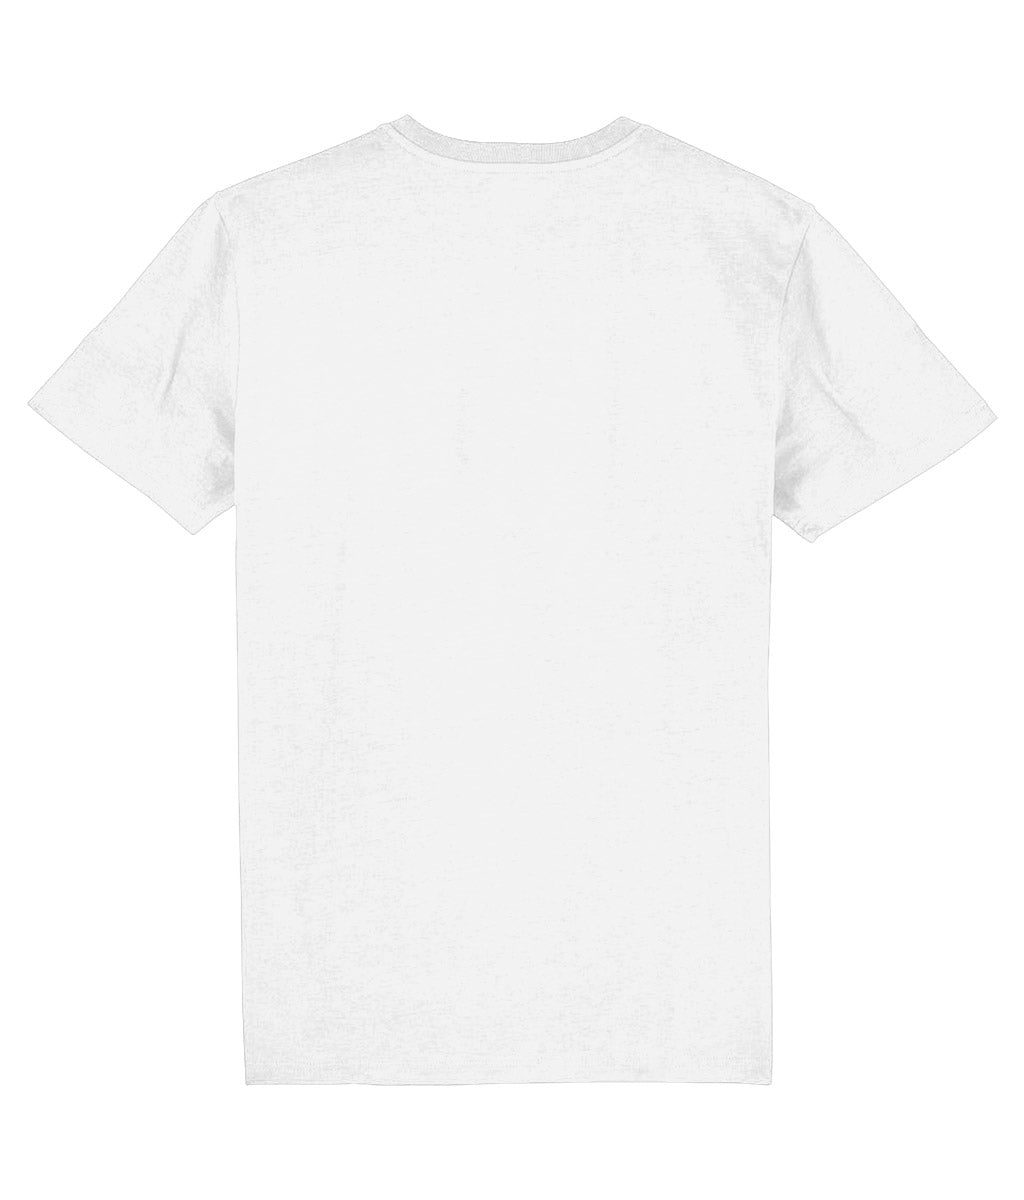 Sherlock Bones "Skull Stamp" T-Shirt (White/Black)